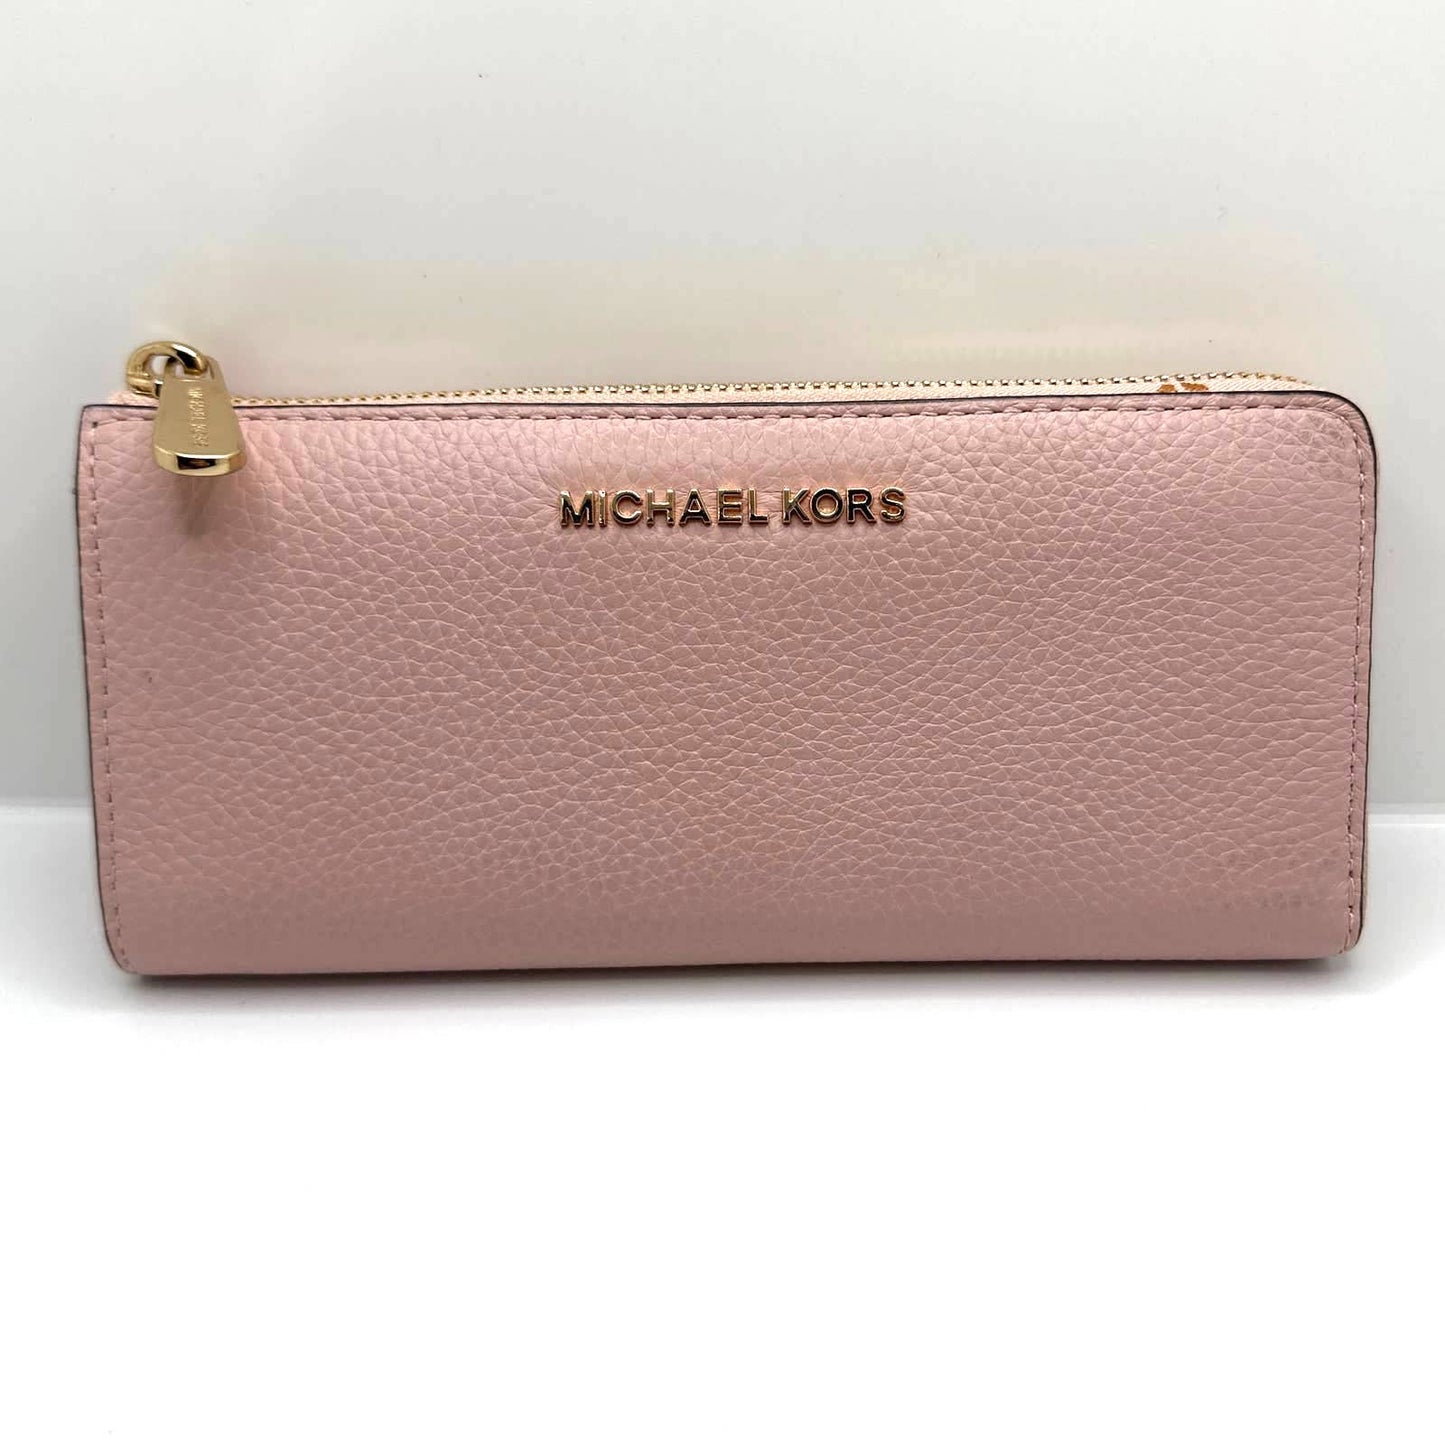 MICHAEL KORS Pink Zip Around Wallet